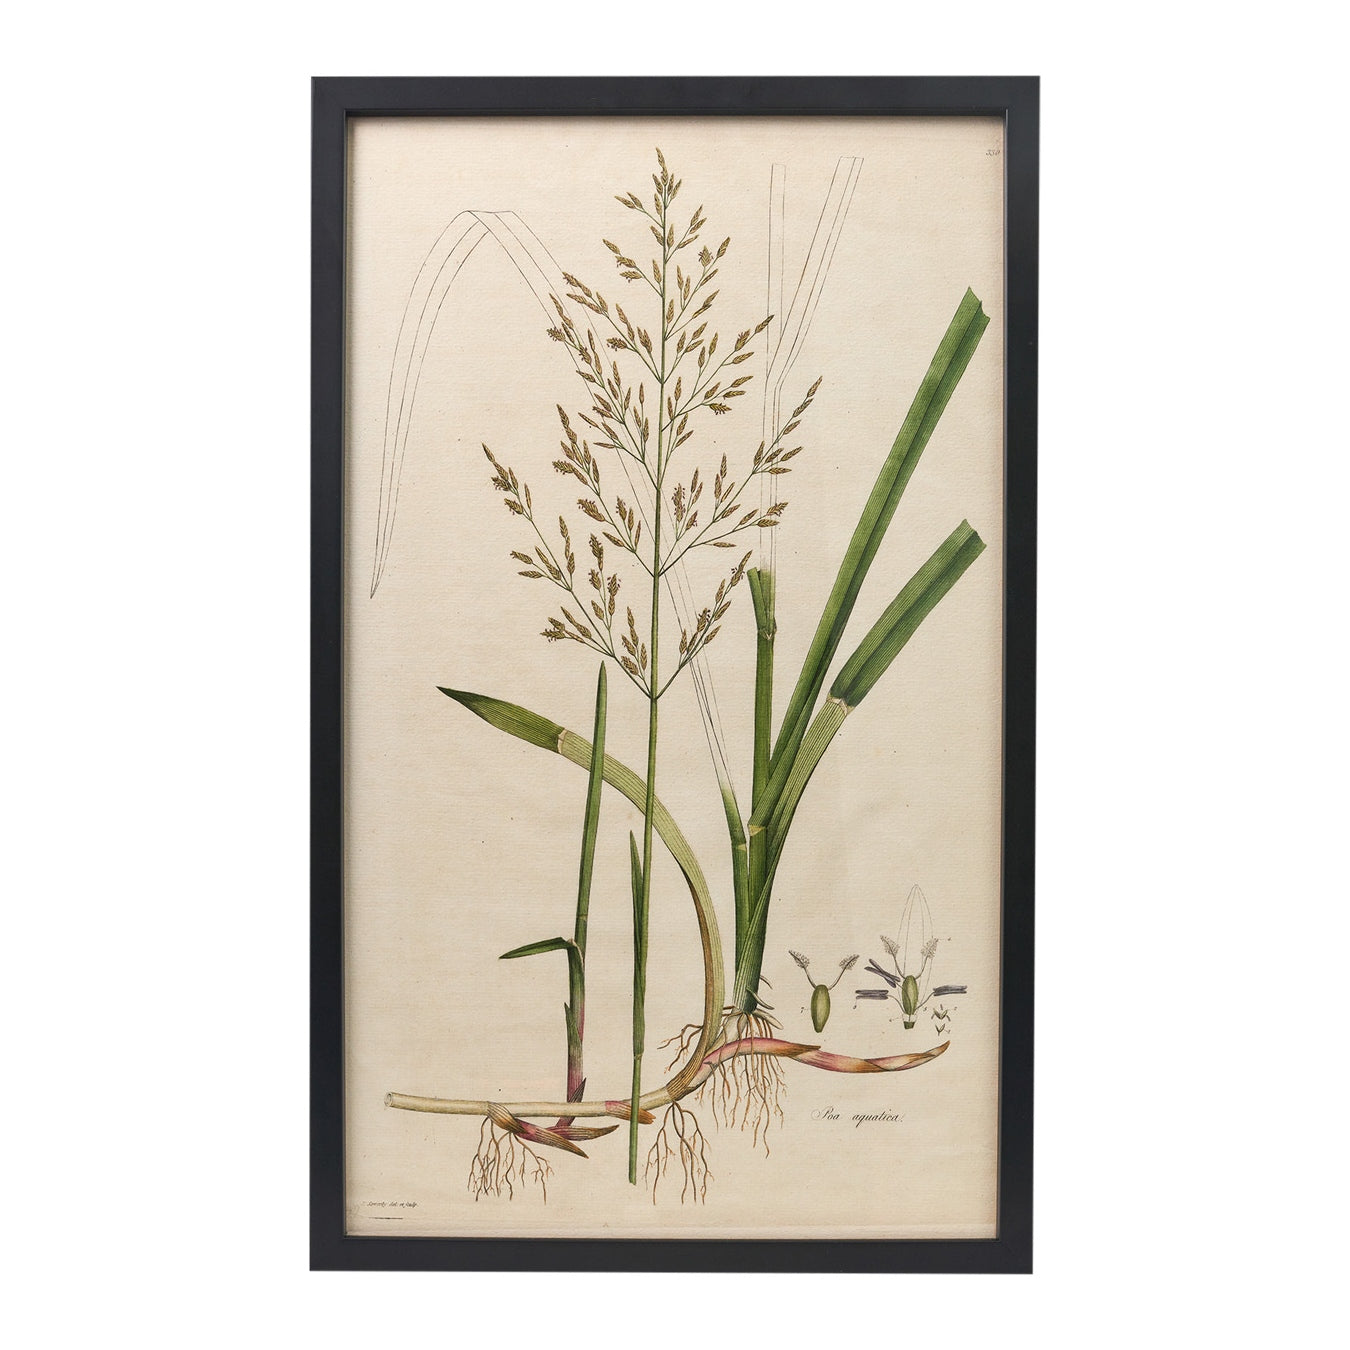 Poa aquatica ‘Flora Londinensis’ Botanical Print - Framed